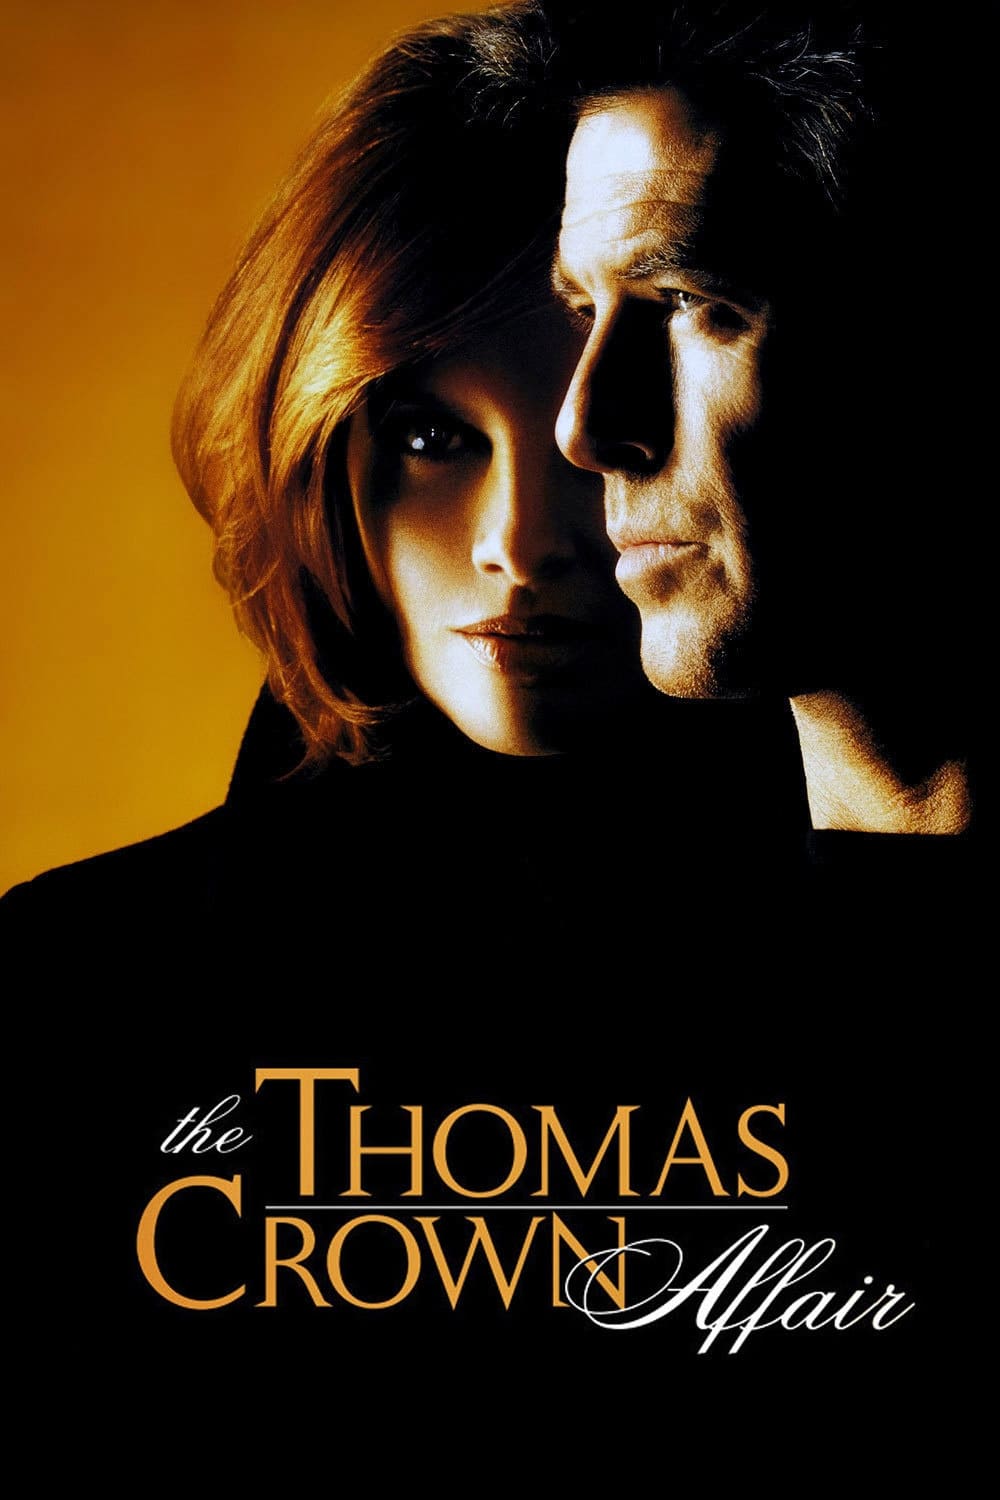 El secreto de Thomas Crown